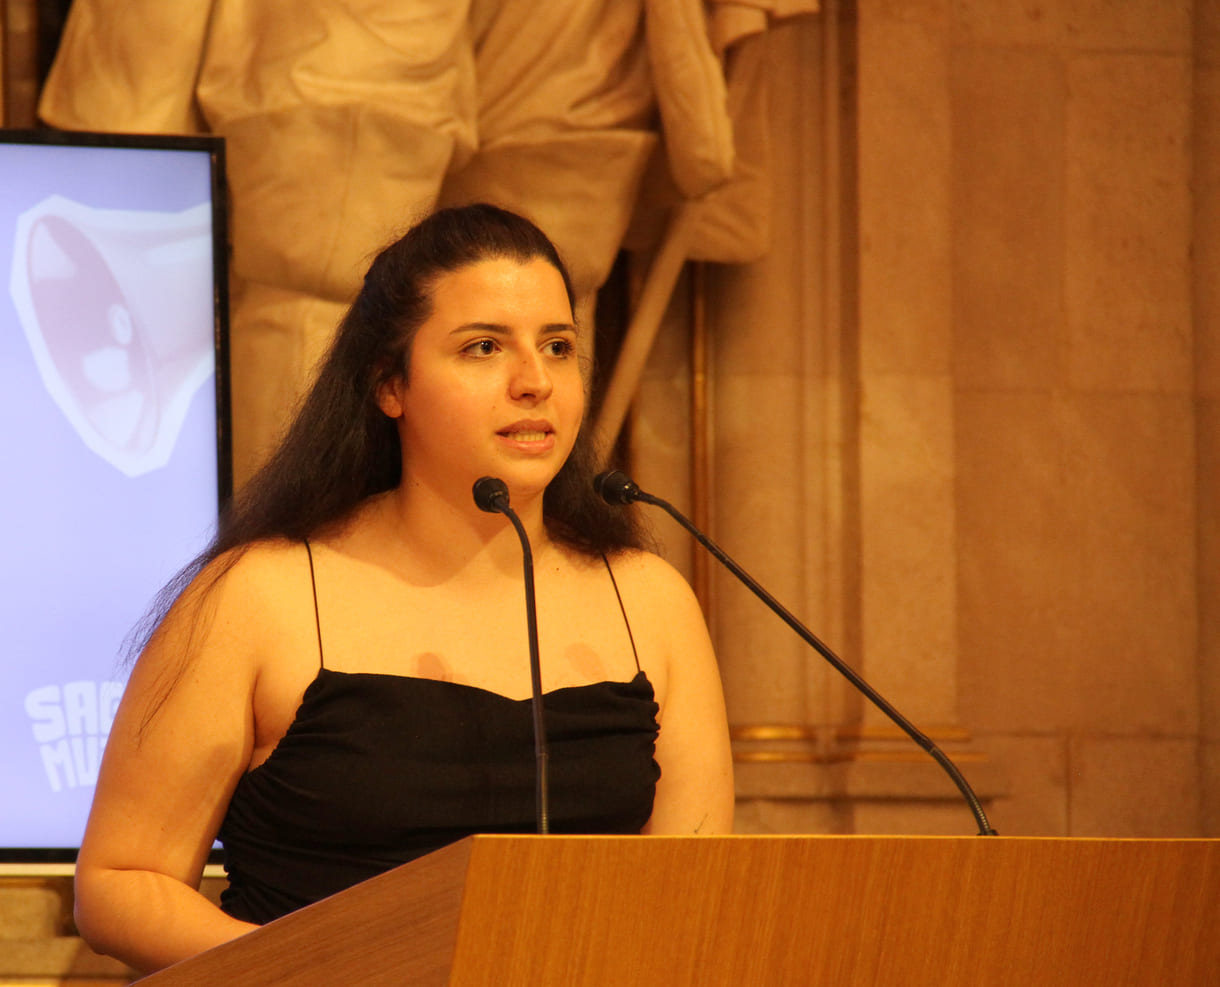 Zara Ağtaş bei ihrer Rede im Festsaal des Wr. Rathauses